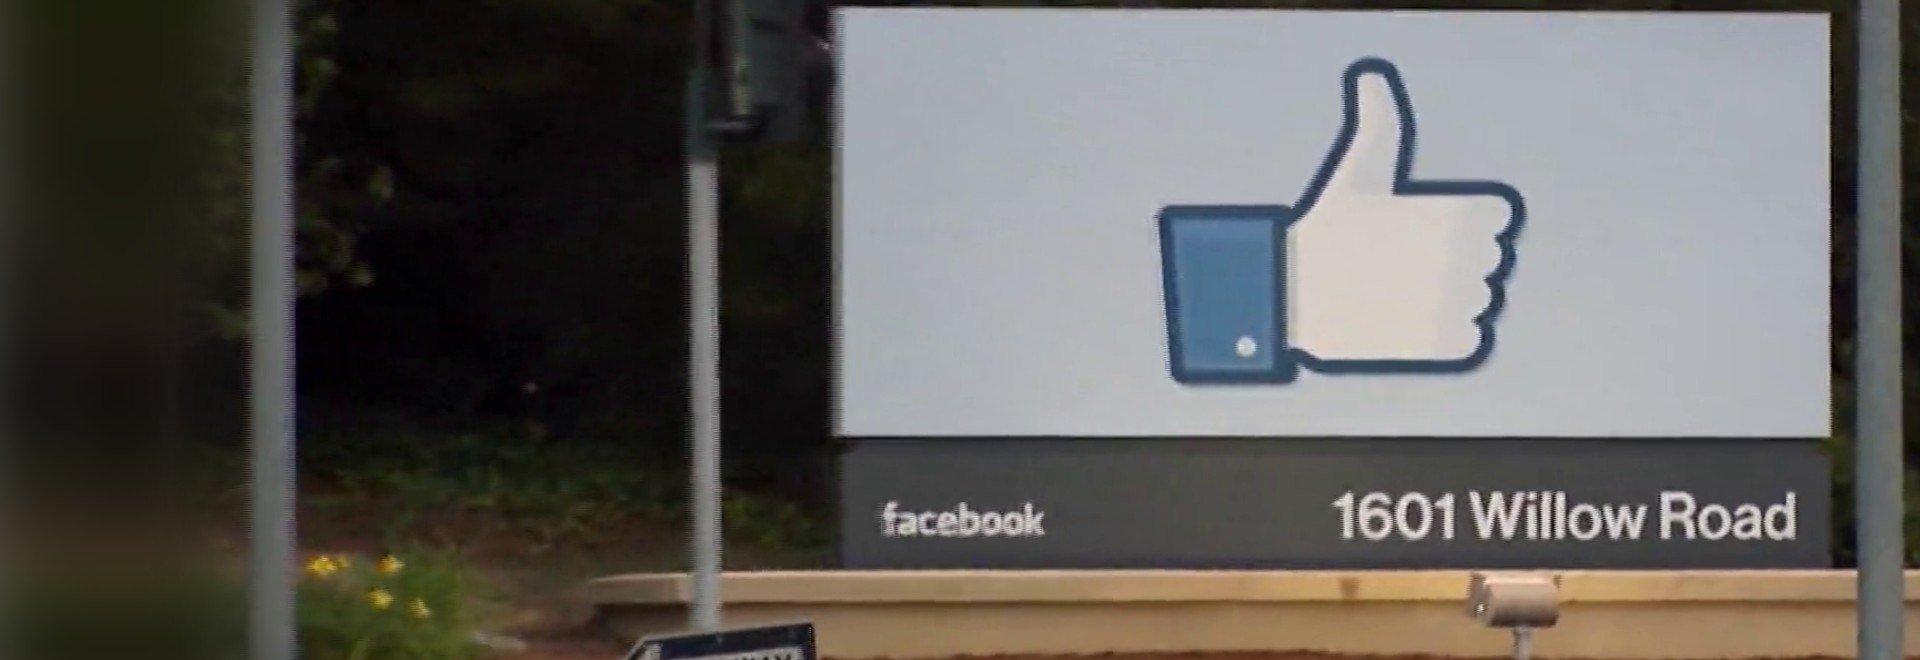 Il caso Facebook: scandalo in rete